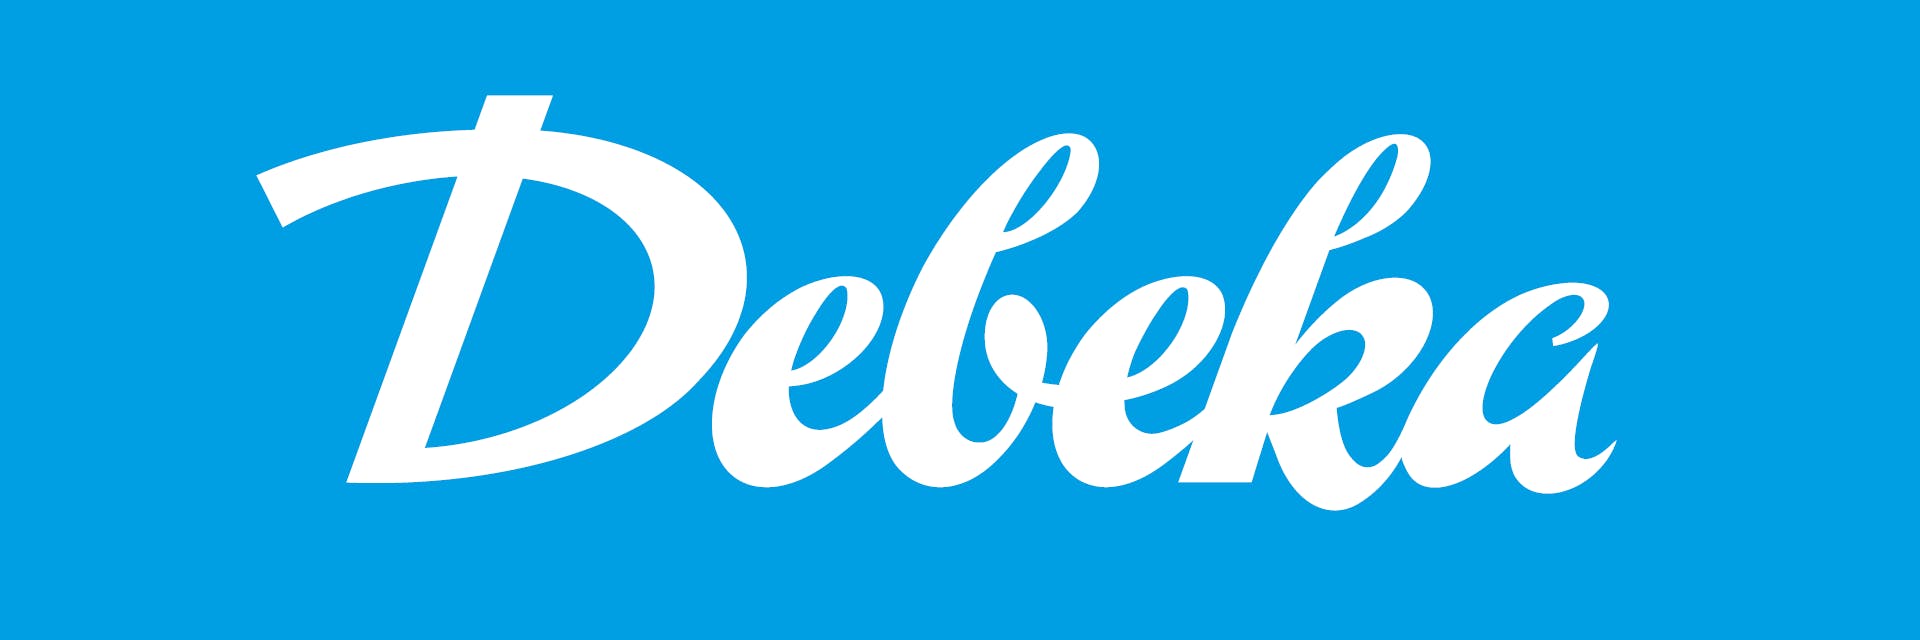 Logo der Debeka